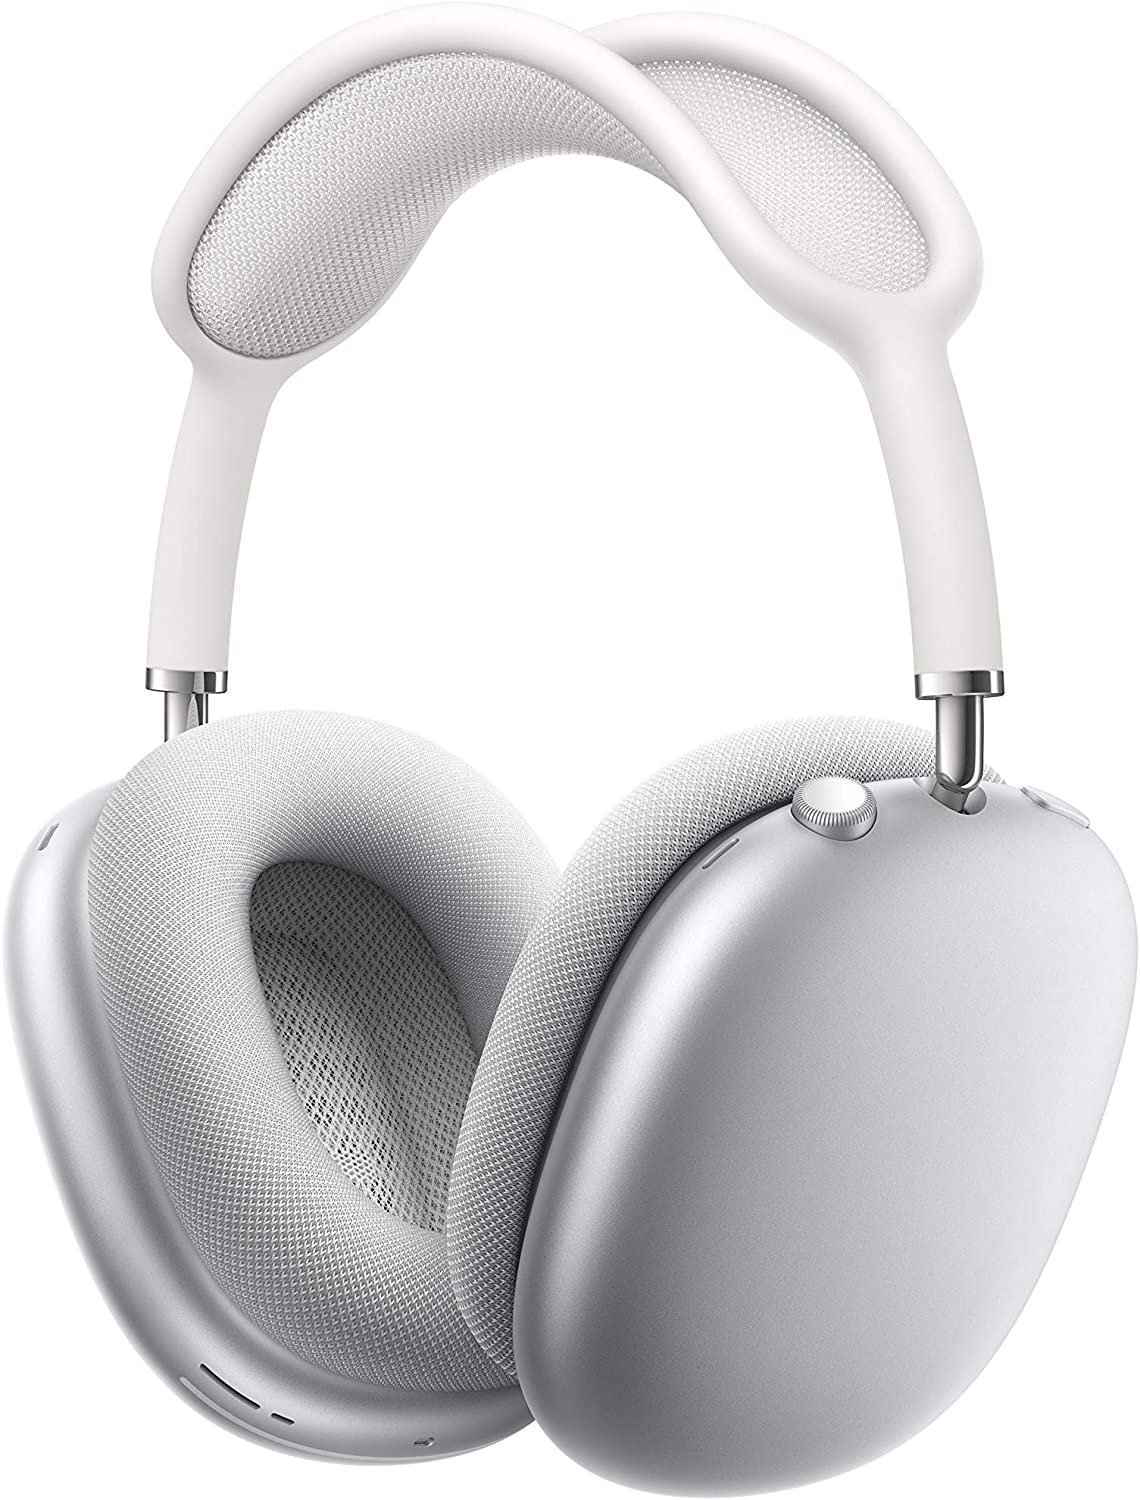 Audífonos Inalámbricos Apple Airpods Max c/Smart Case - Plata